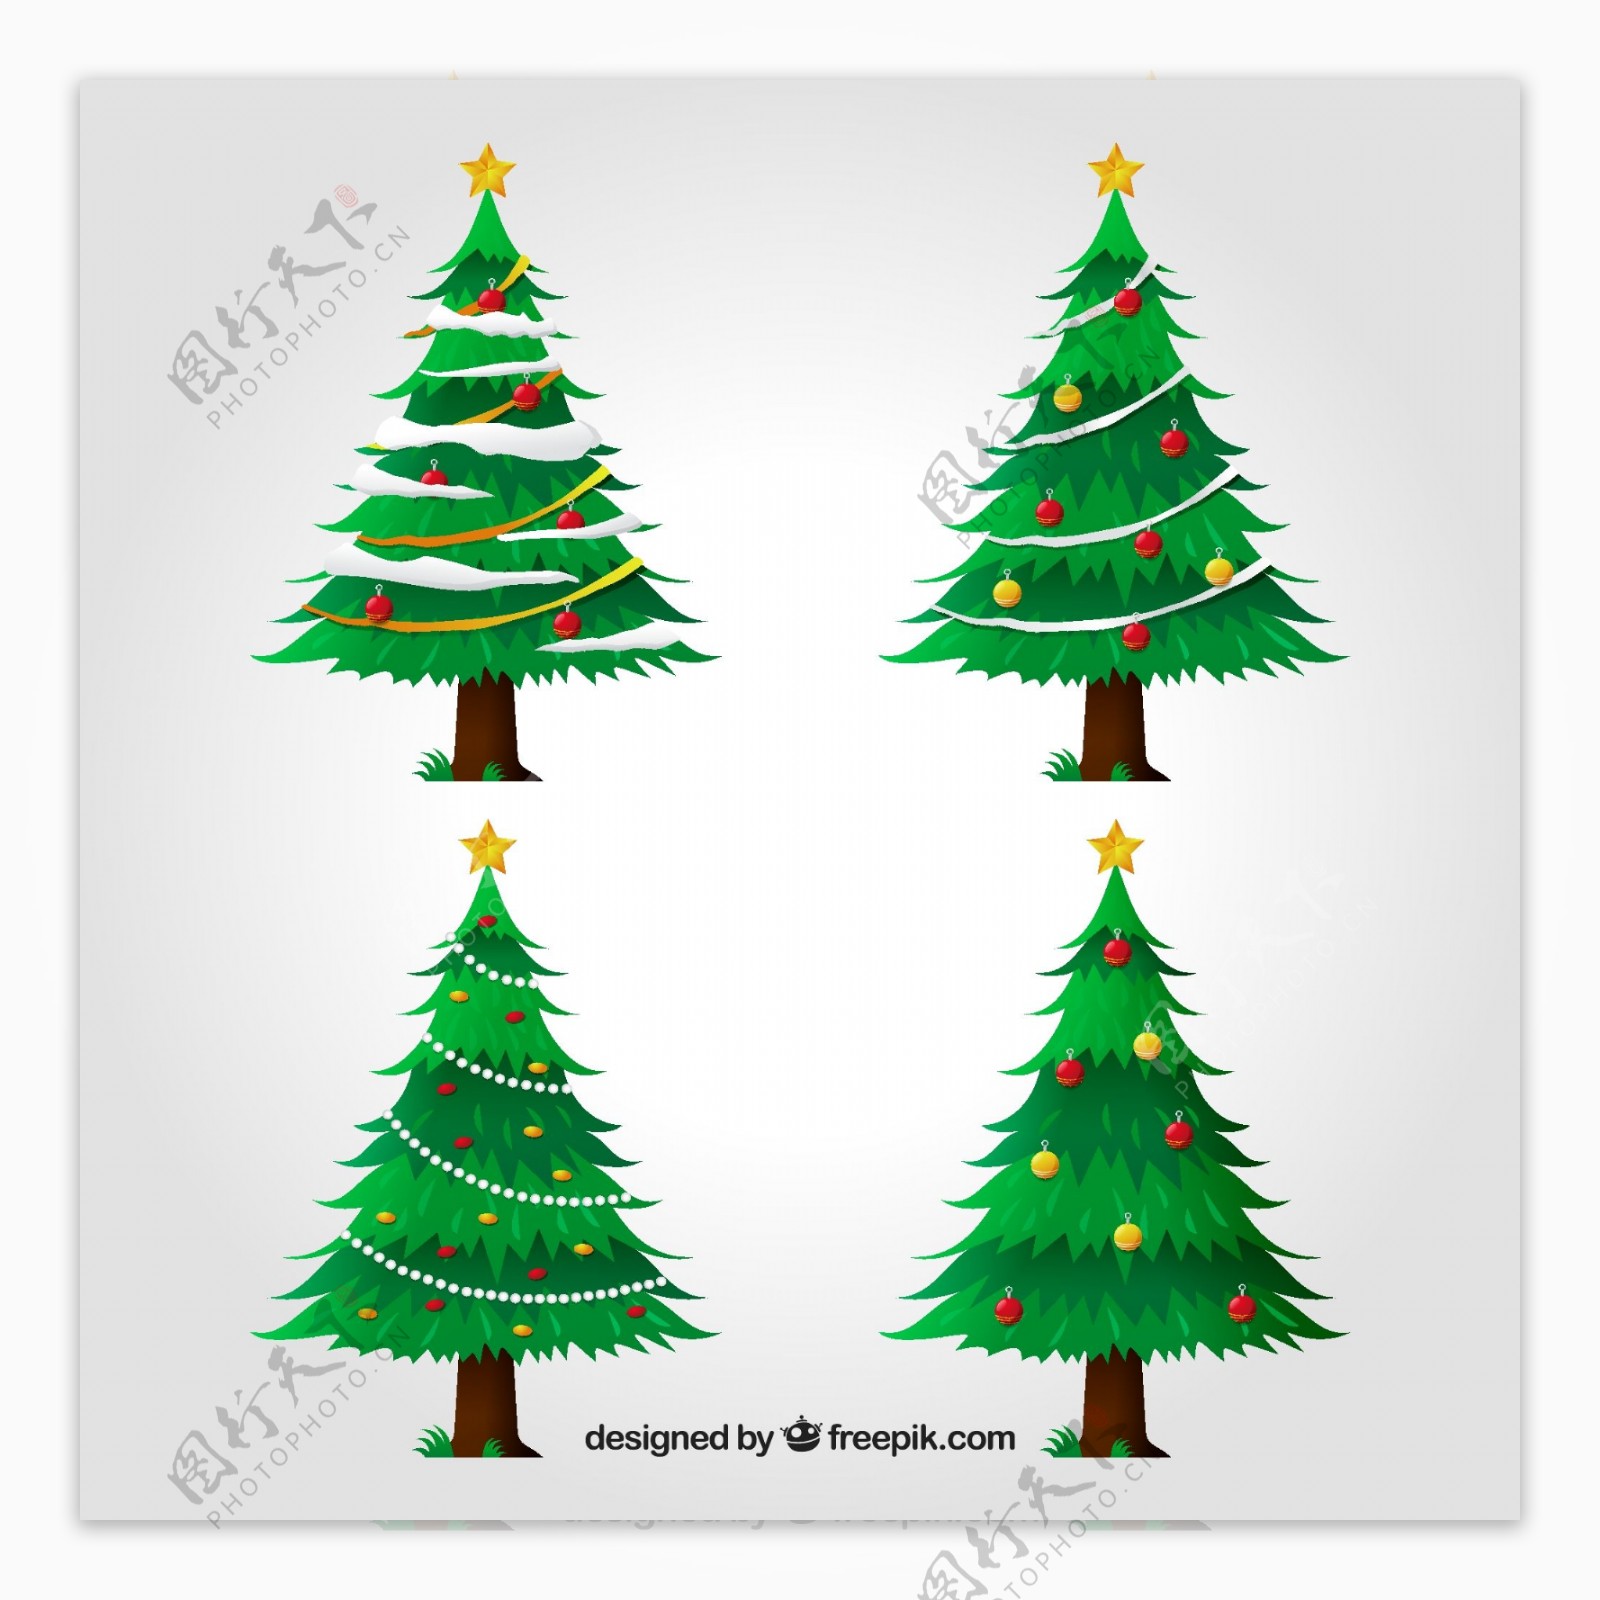 4款创意绿色圣诞树